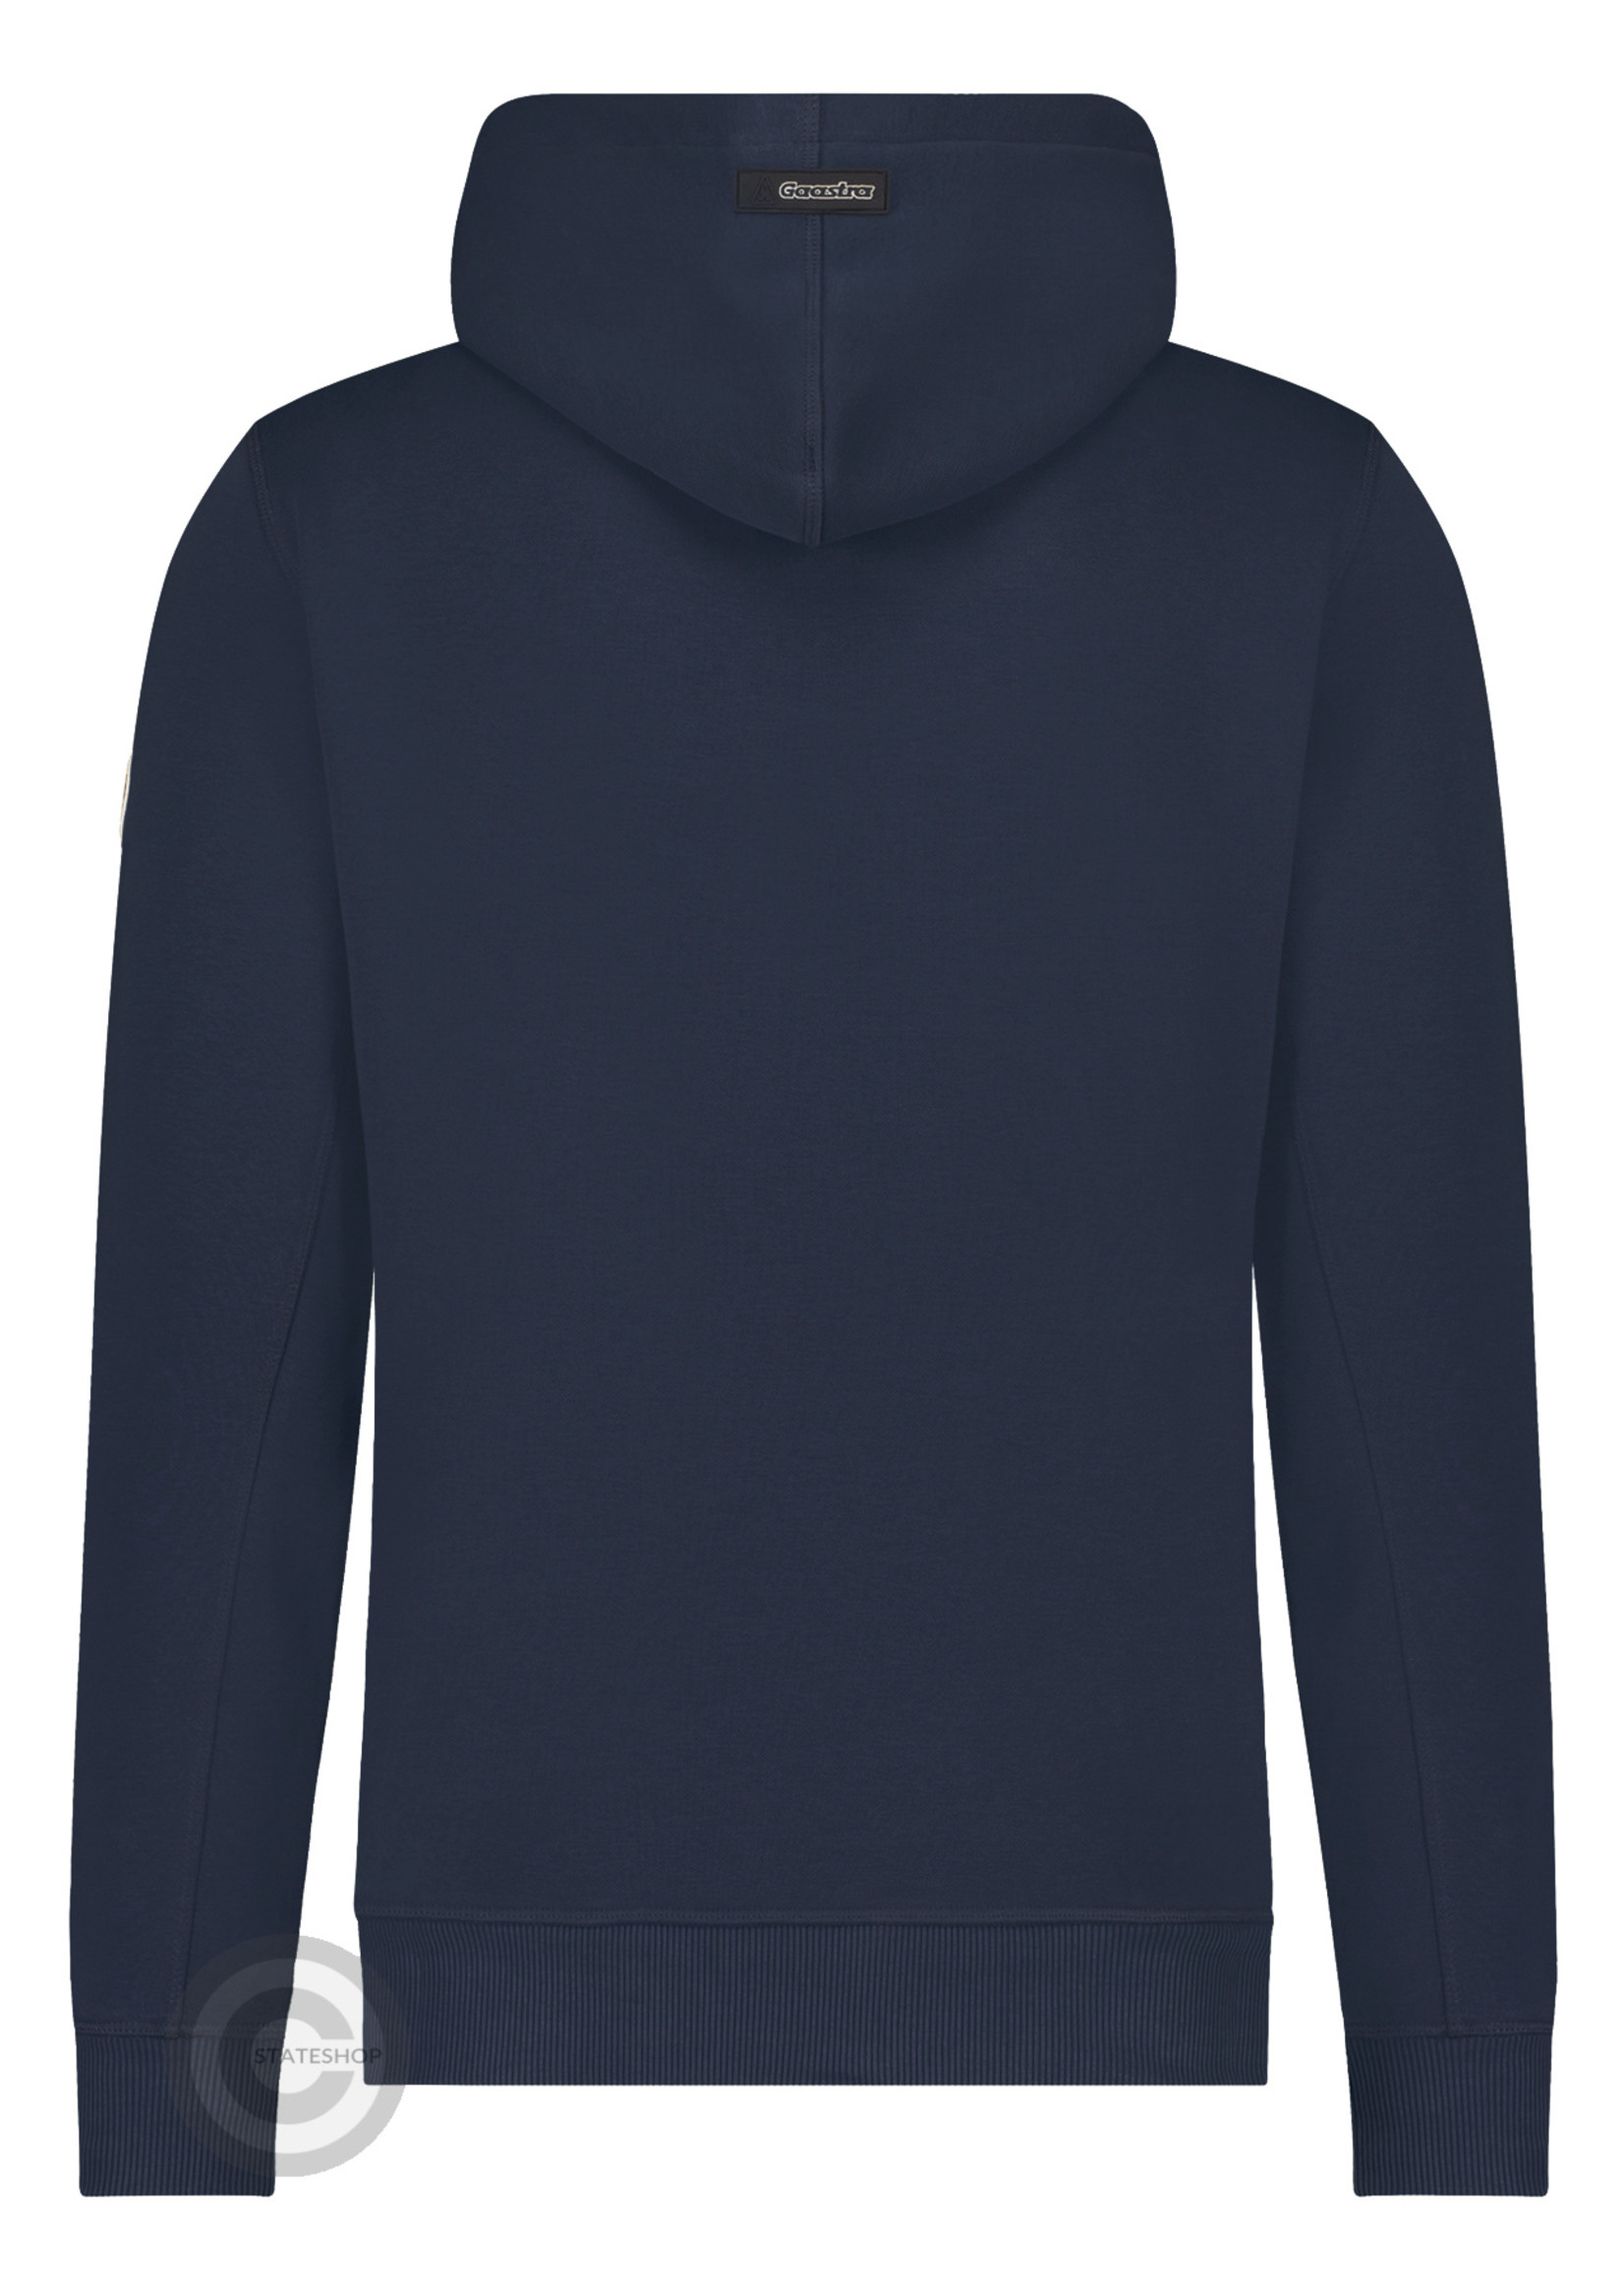 Gaastra Gaastra heren hoodie sweater "Artic", donkerblauw